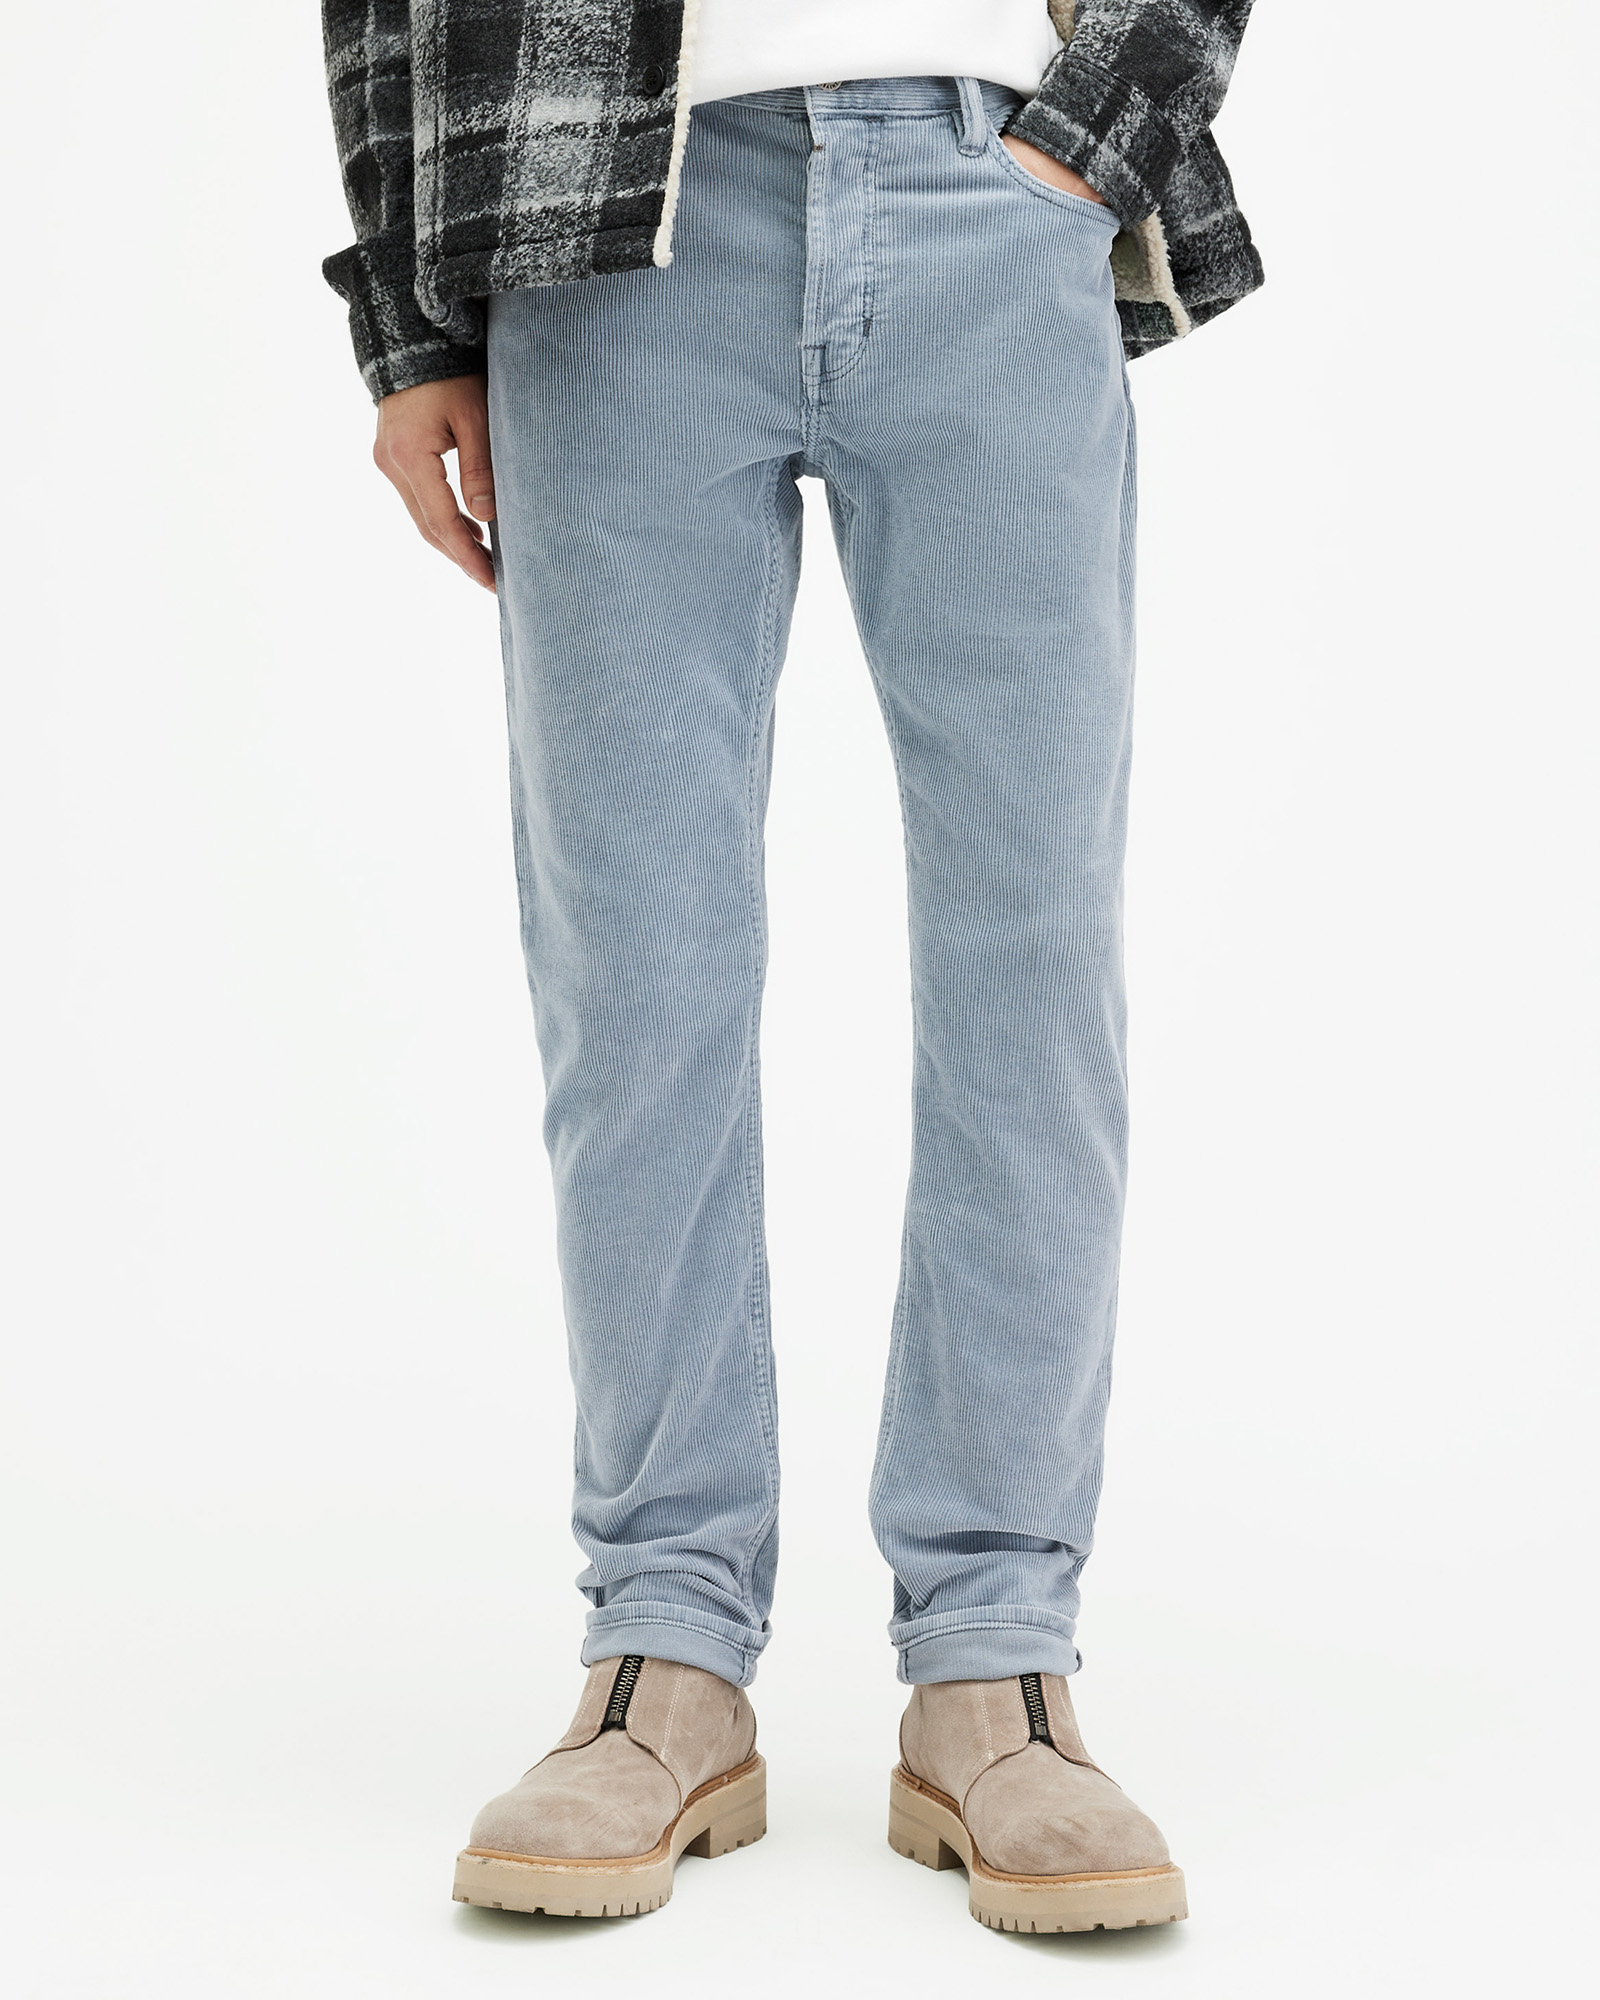 AllSaints Rex Slim Fit Corduroy Jeans,, Dusty Blue